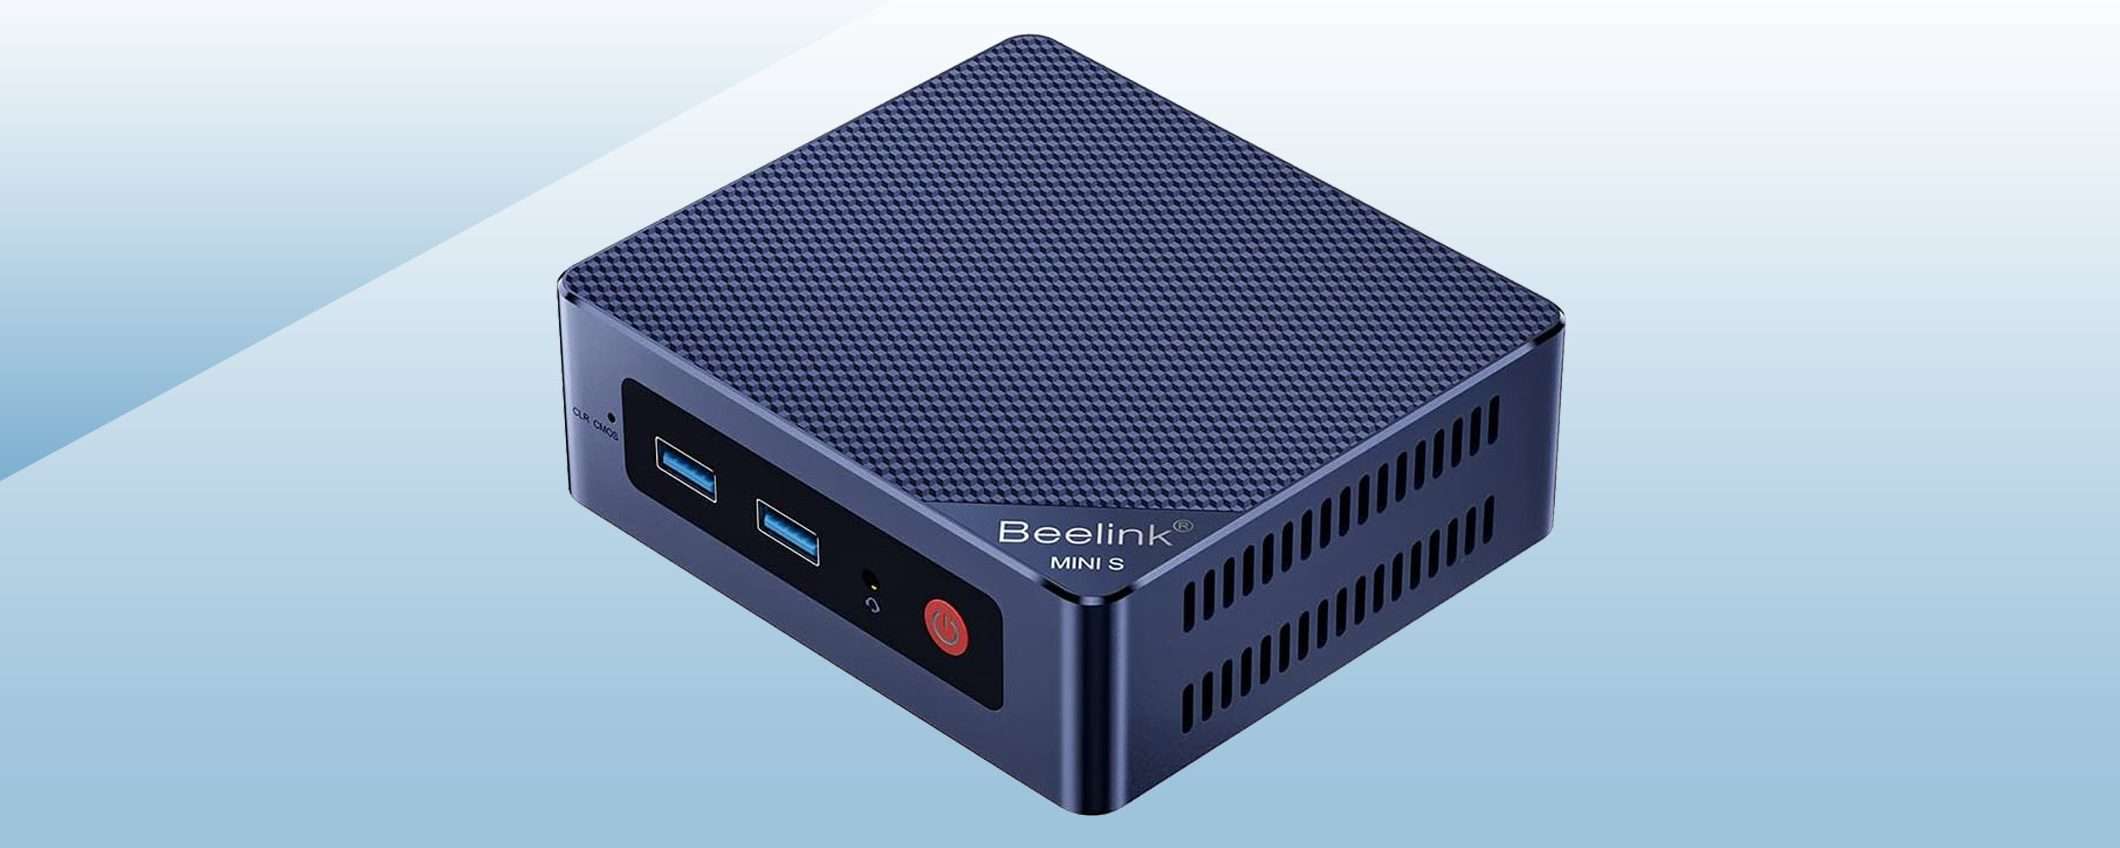 Mini PC Beelink S12 PRO: il coupon di Amazon fa scendere il prezzo al MINIMO STORICO